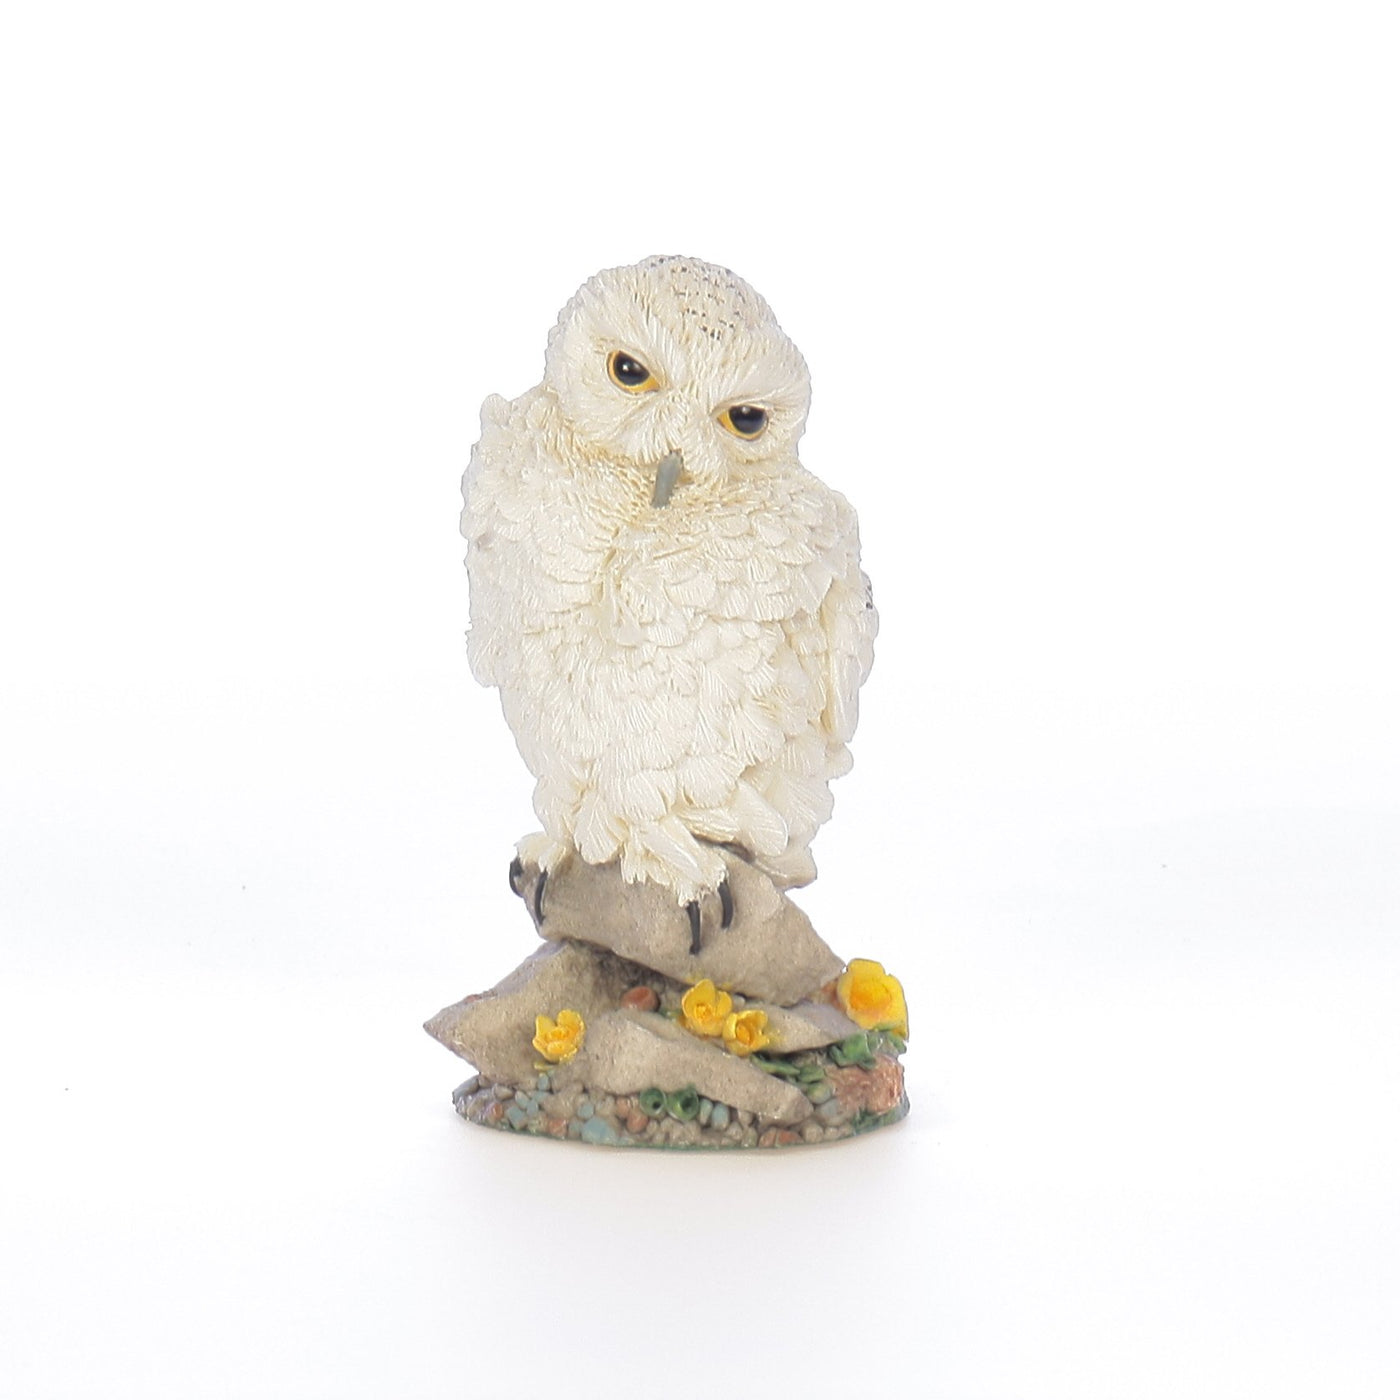 The_Franklin_Mint_Snowy_Owl_Bird_Figurine_